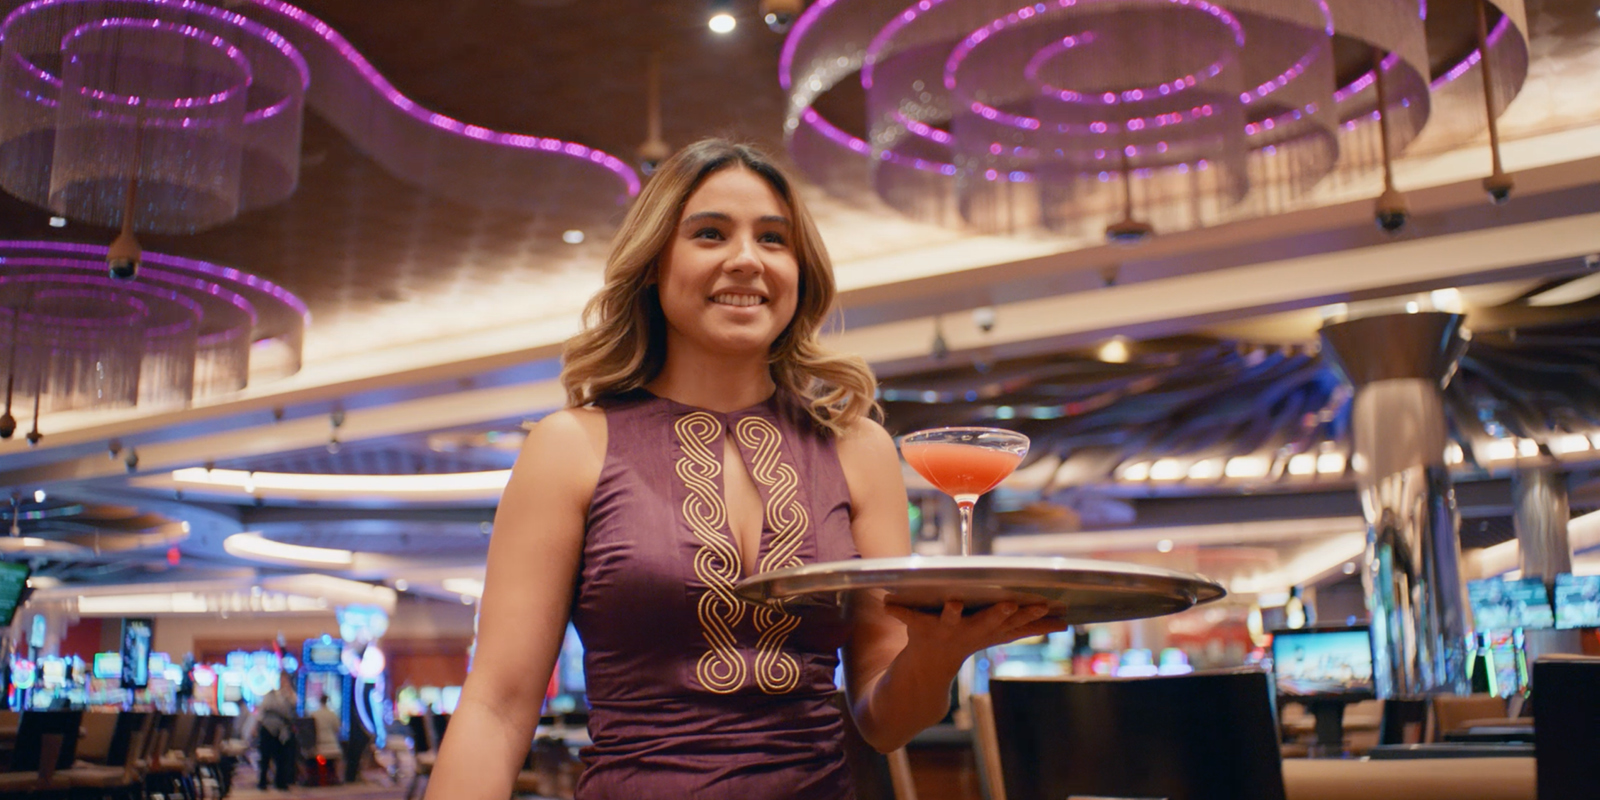 SAHARA Las Vegas cocktail waitress